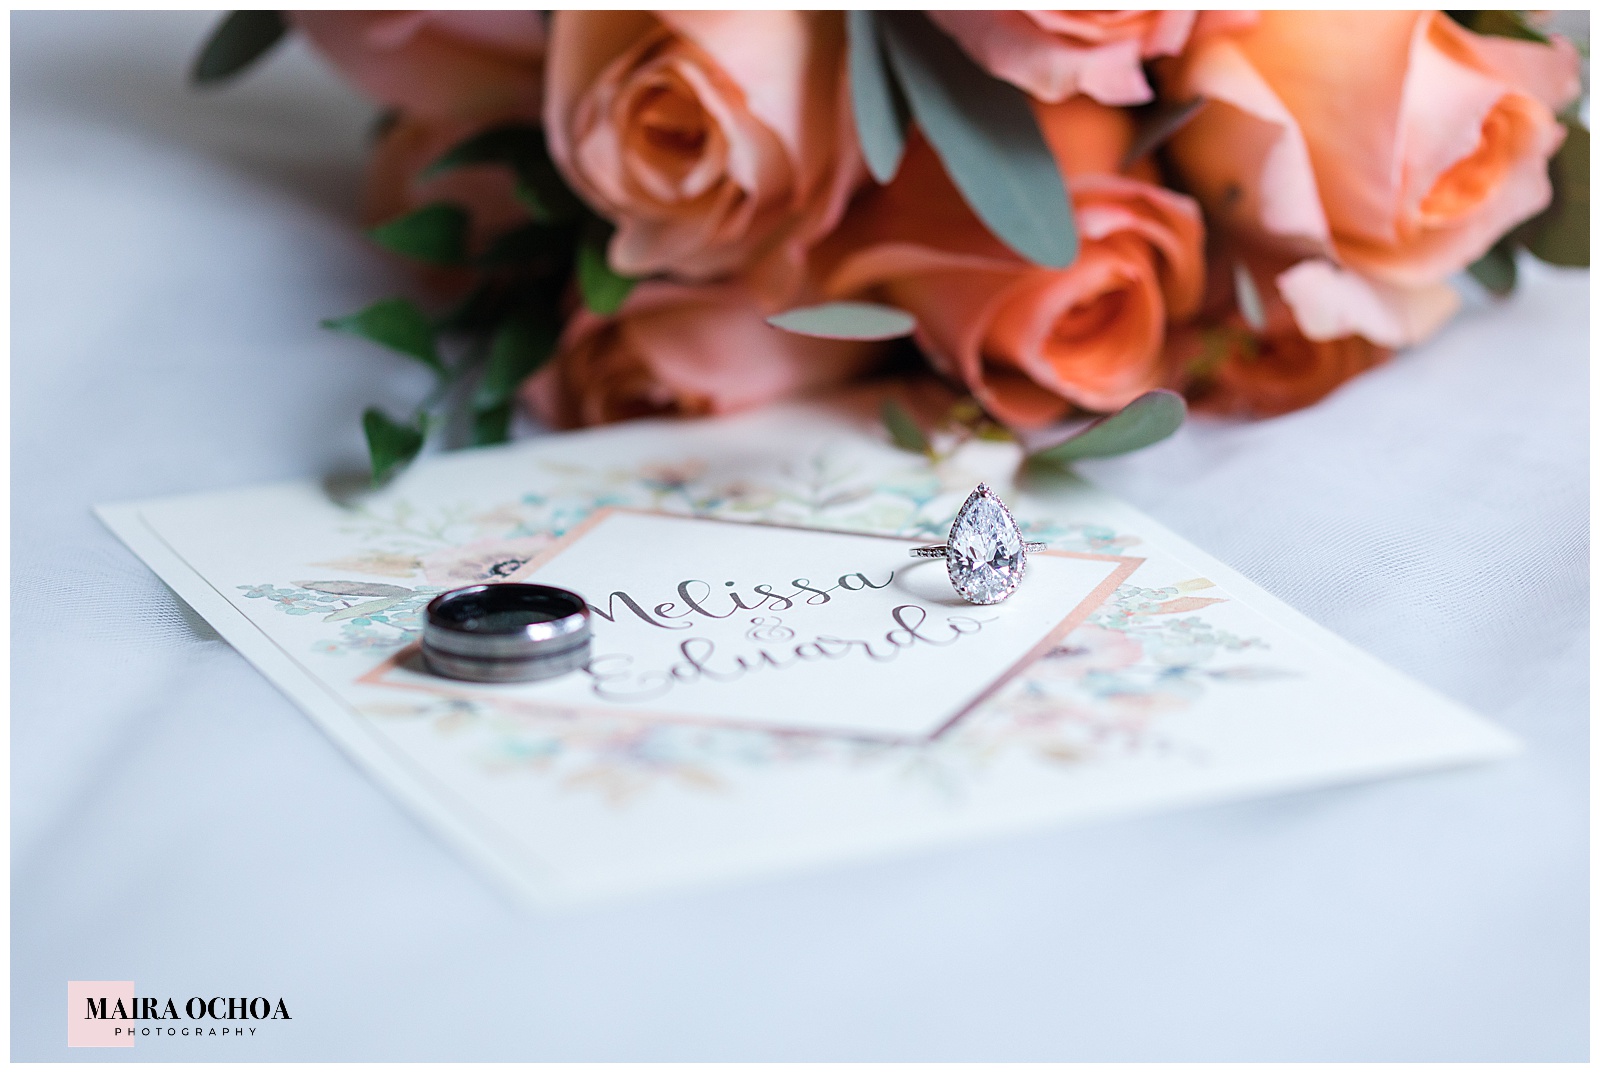 Wedding Ring, Brides Wedding Ring, Wedding Details, Brides Bouquet